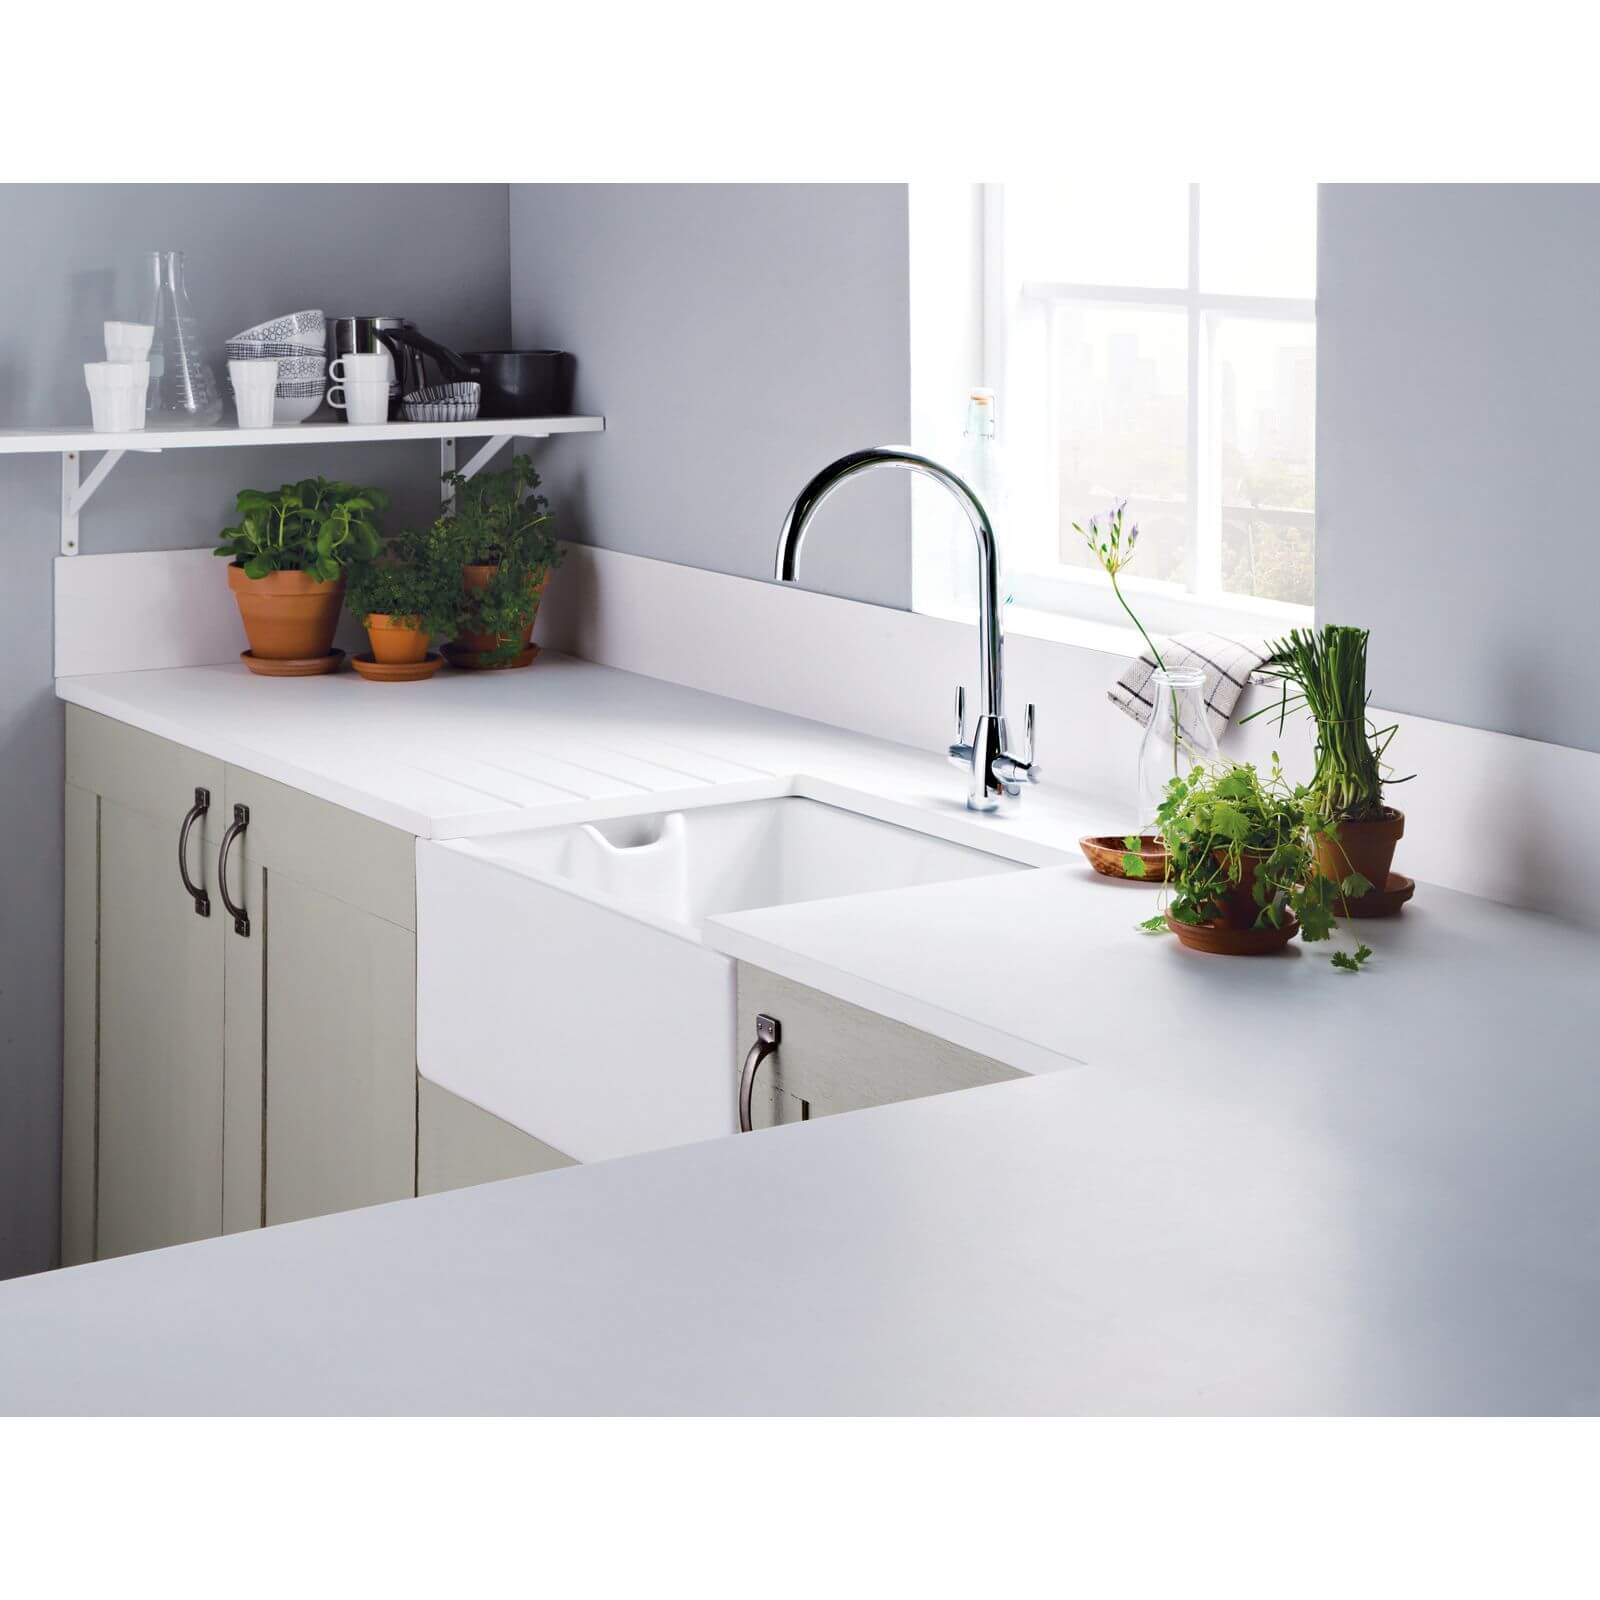 Minerva White Kitchen Worktop - 305 x 65 x 2.5cm